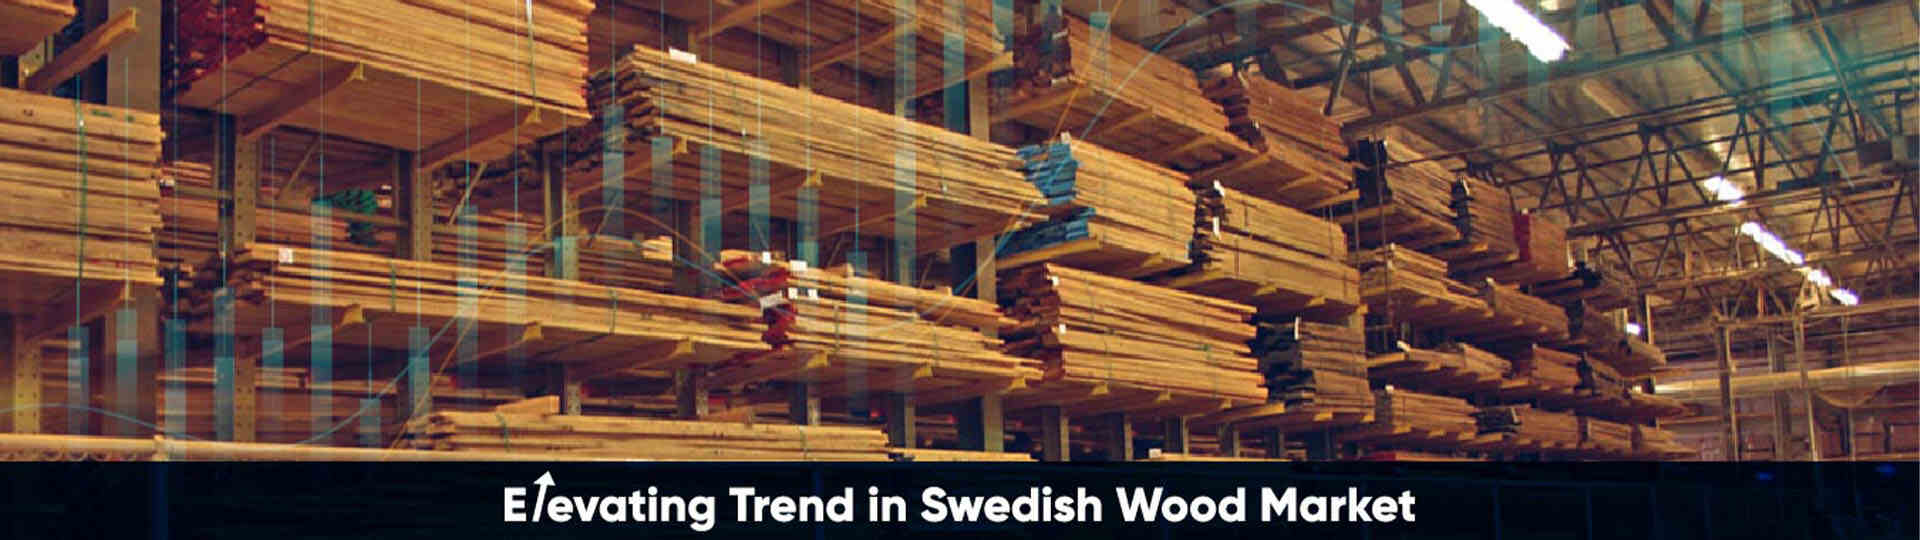 Swedish Wood Market